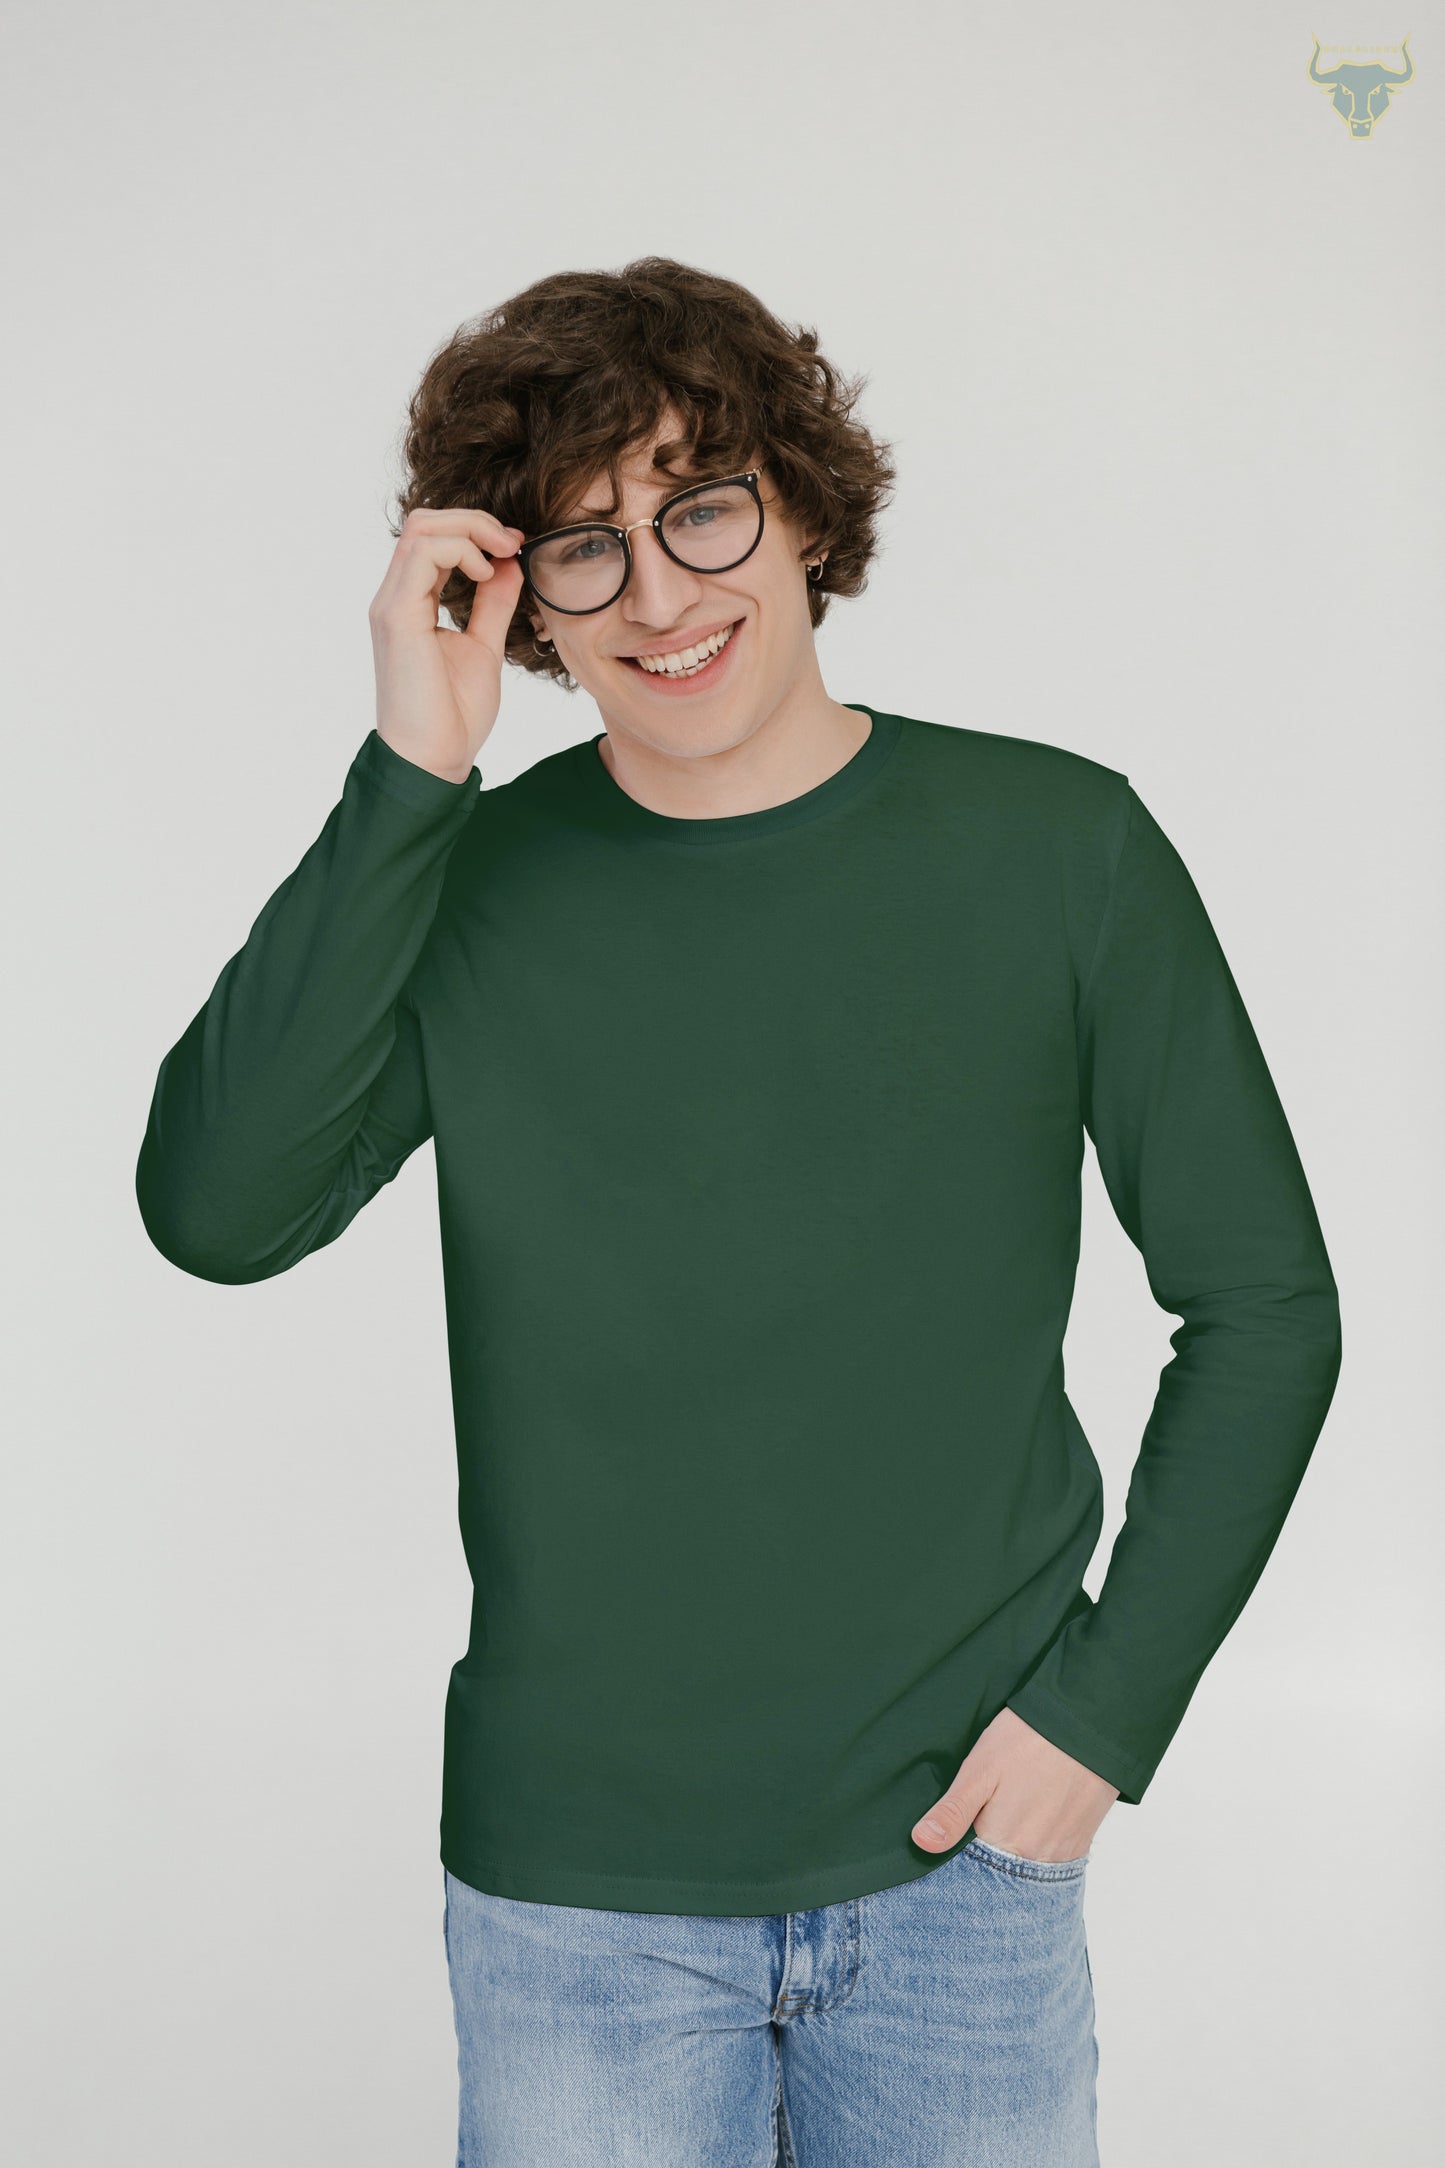 Men's plain Olive Green Long sleeves T-shirt